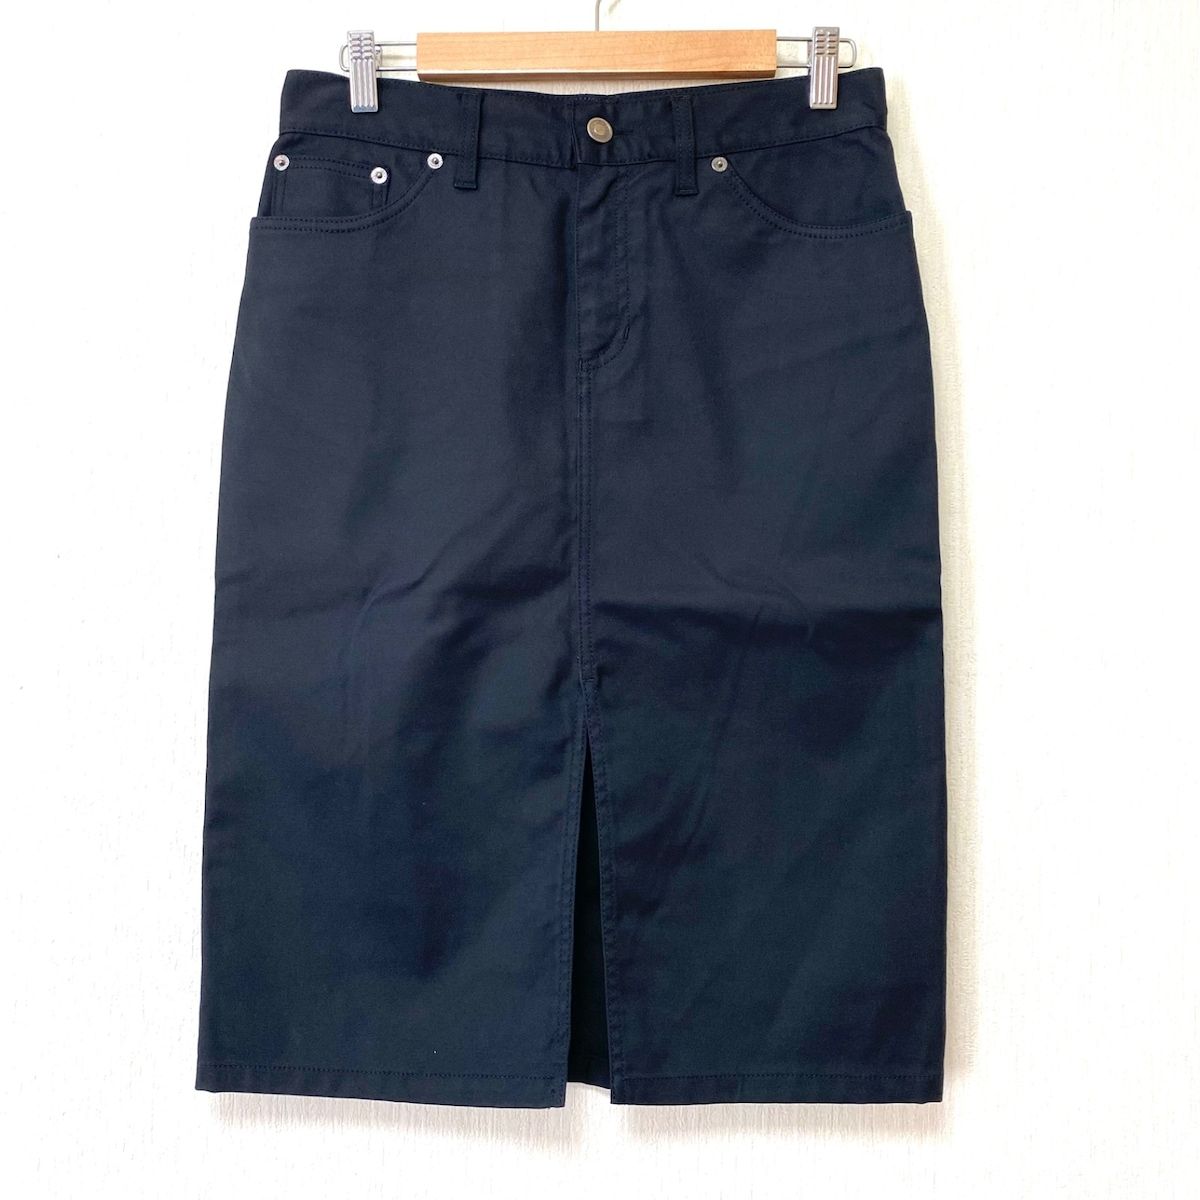 GUCCI(グッチ) スカート サイズ40 M レディース - 205-1387-7881 黒 